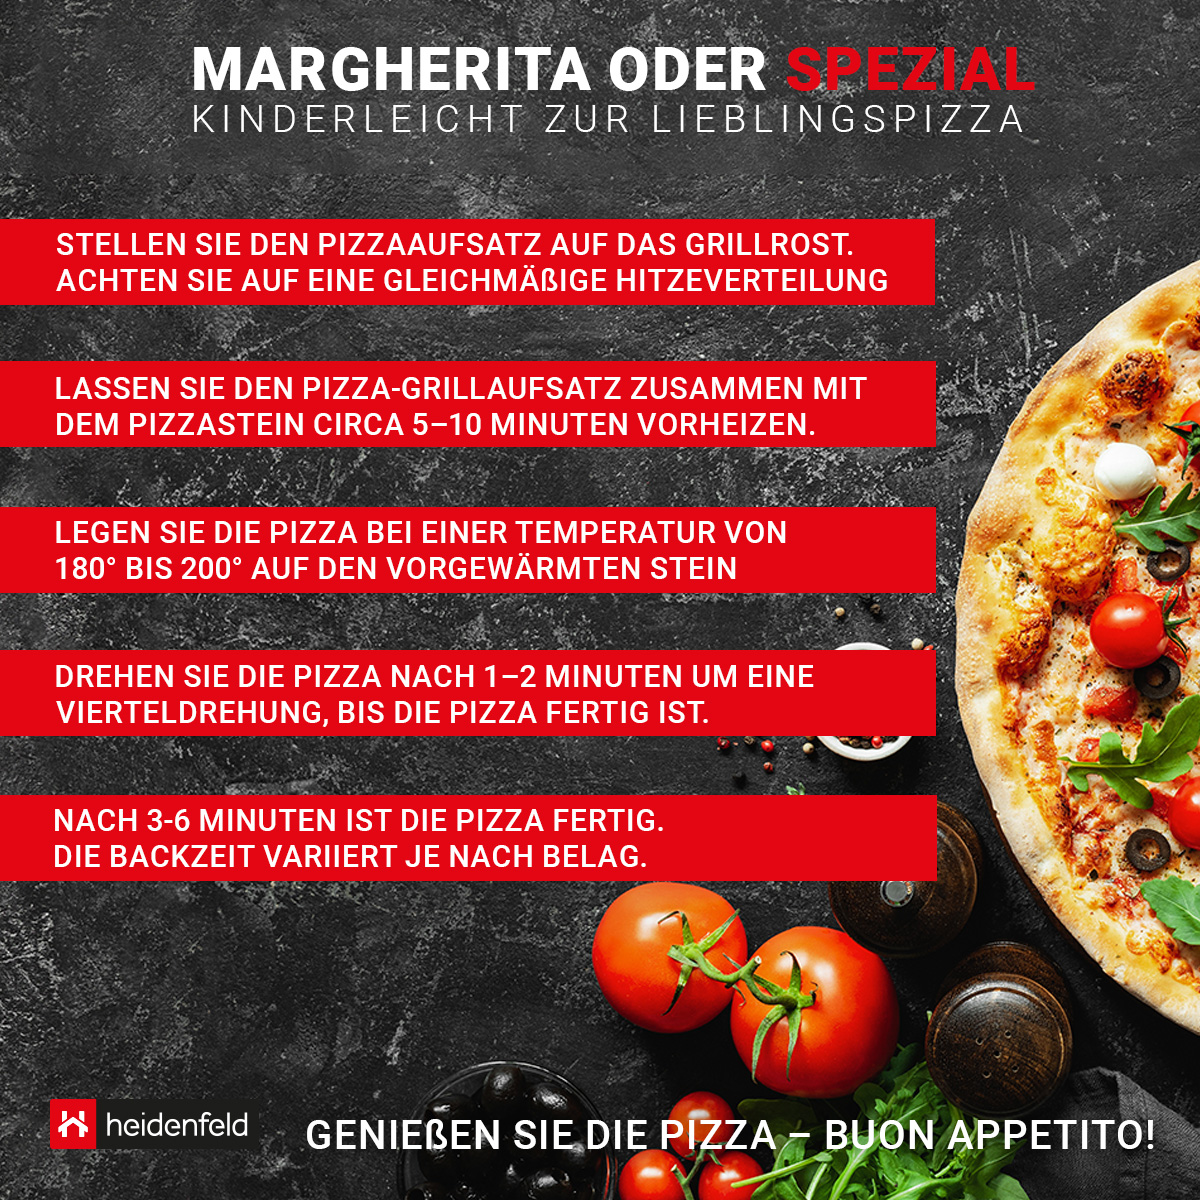 mit silber HEIDENFELD Pizzaofen Pizzamaker, Pizzastein Grill Aufsatz Roma für